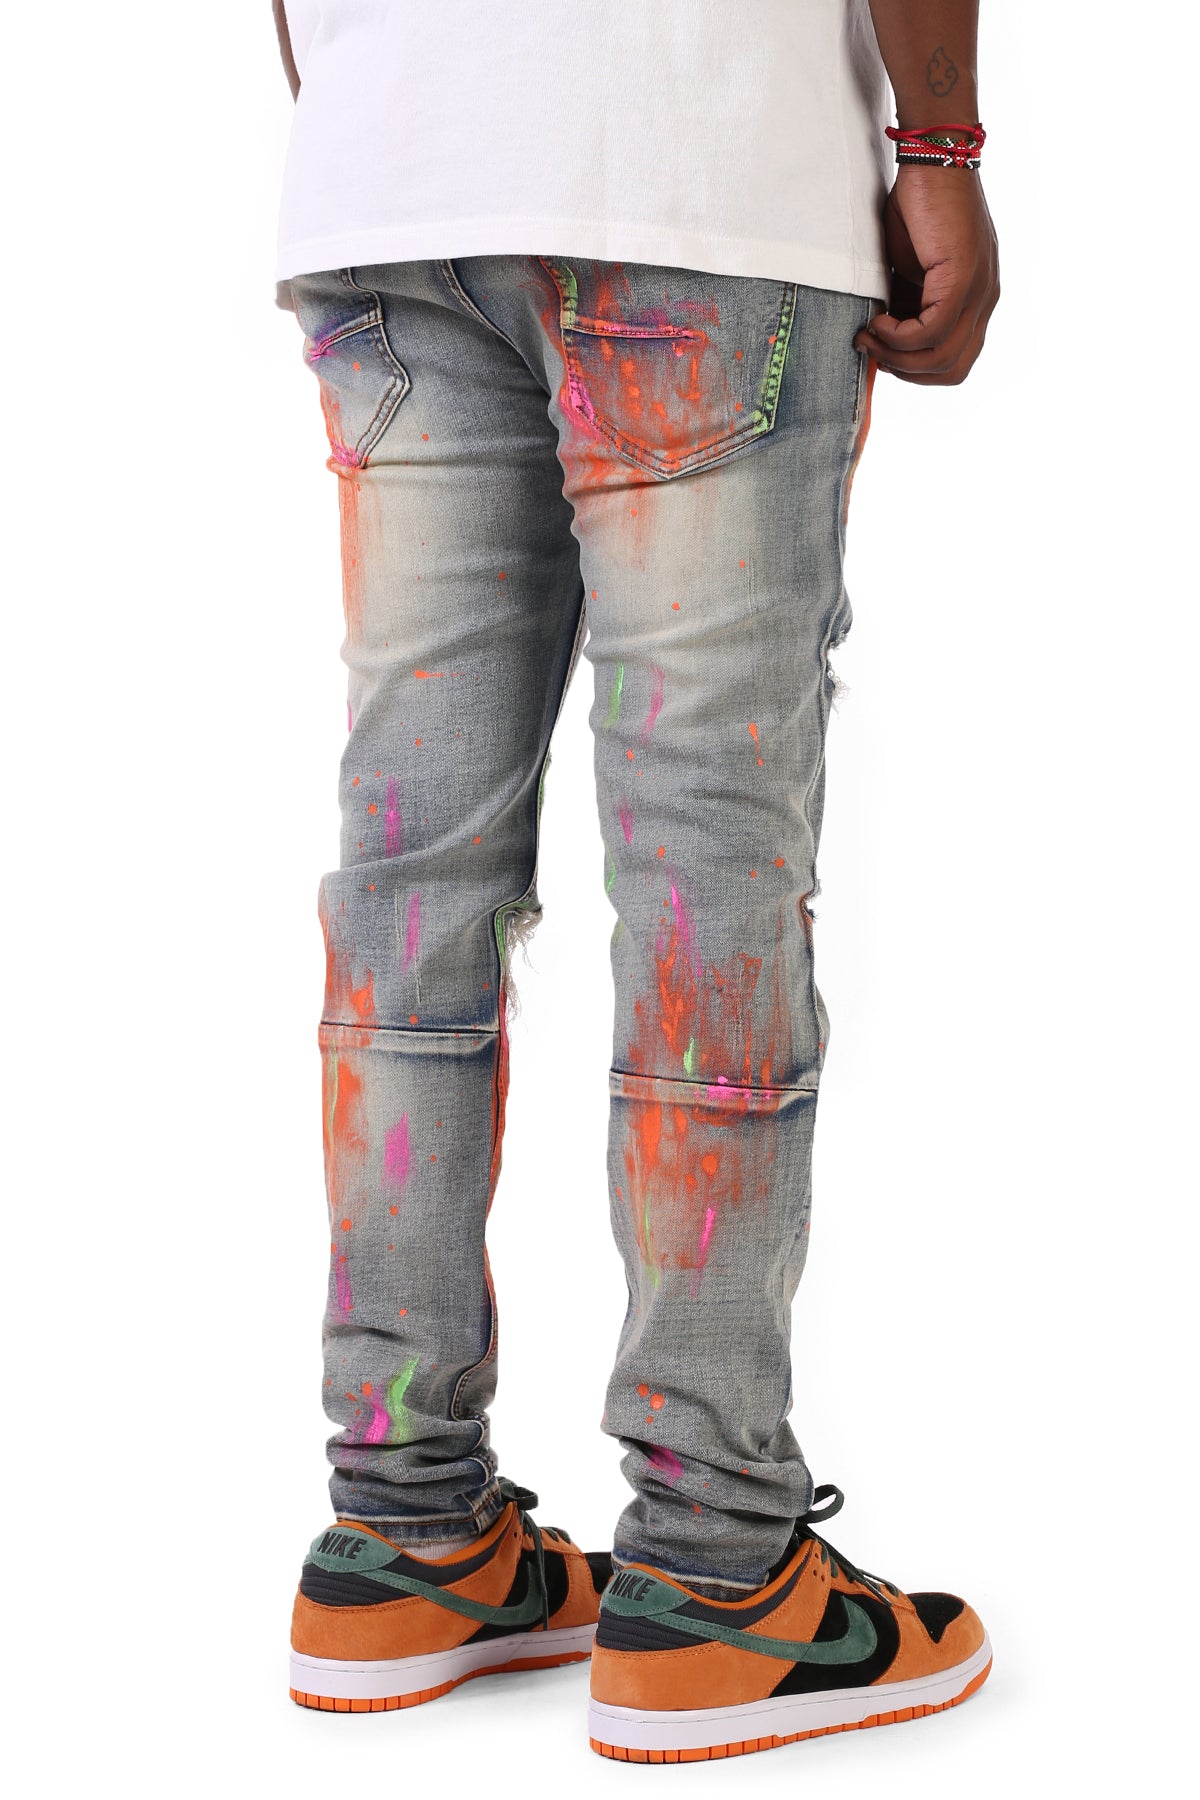 Skinny Jeans With Neon Multi-Paint Splatter (Vintage Medium Blue) (6552068620390)